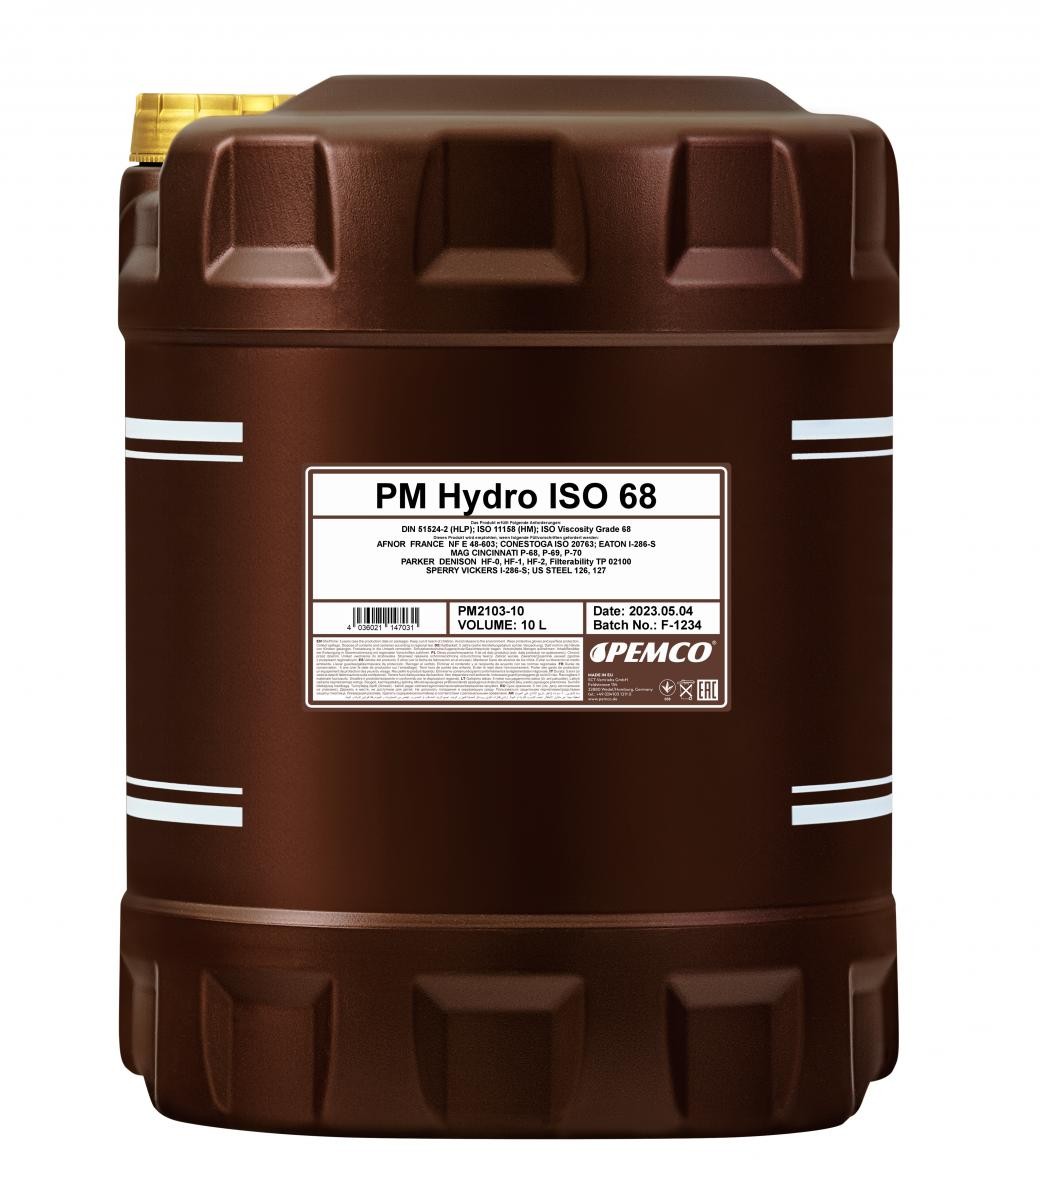 PEMCO Hydro PM2103-10 Hydraulic Oil Capacity: 10l